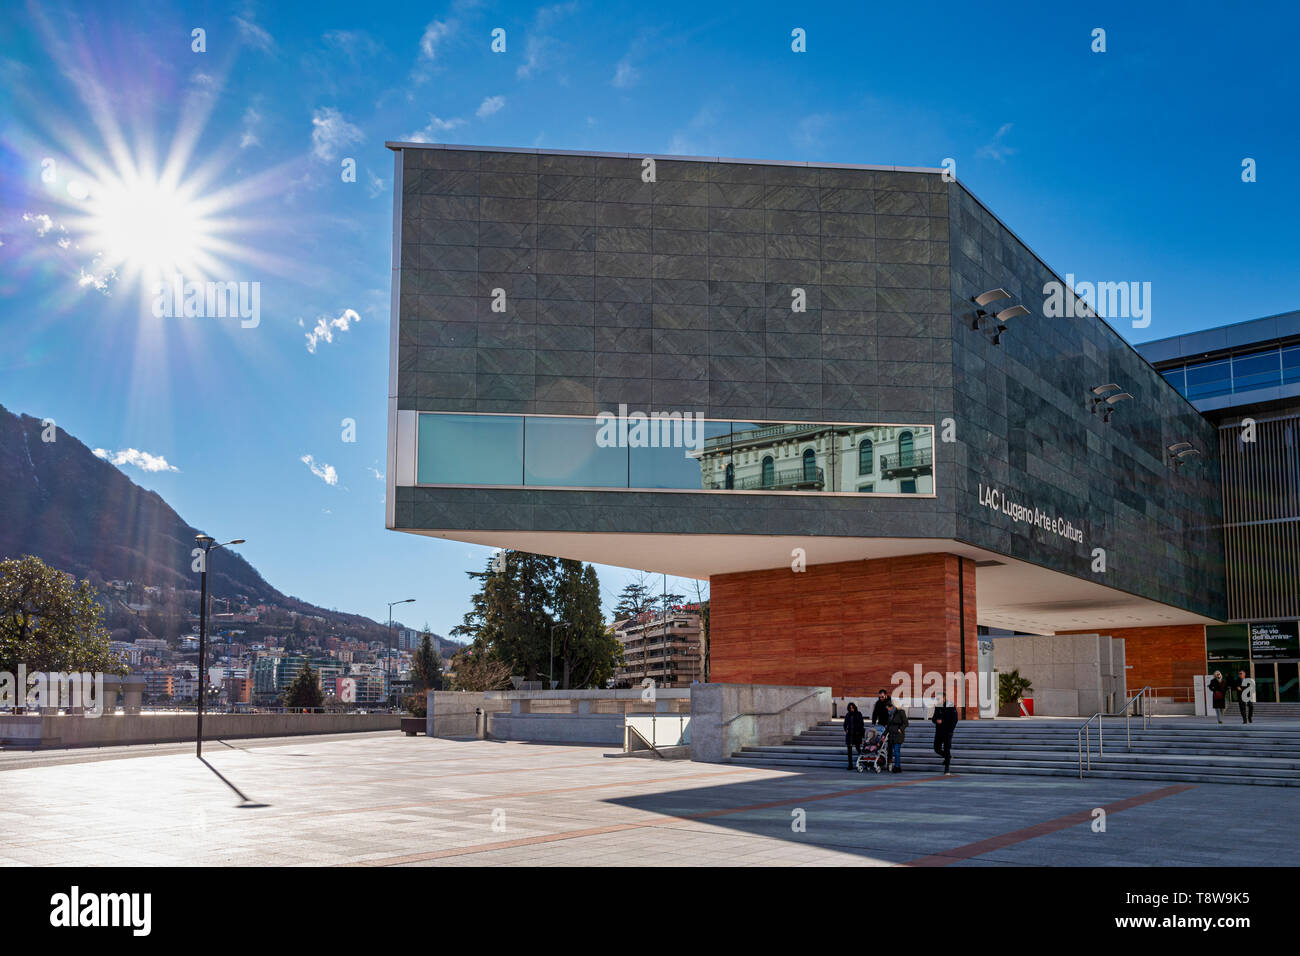 Lugano Arte e Cultura (LAC) ist ein kulturelles Zentrum mit Musik, Video und Performance Kunst im Jahr 2015 in Lugano in der Schweiz eröffnet. Die LAC-Center Stockfoto